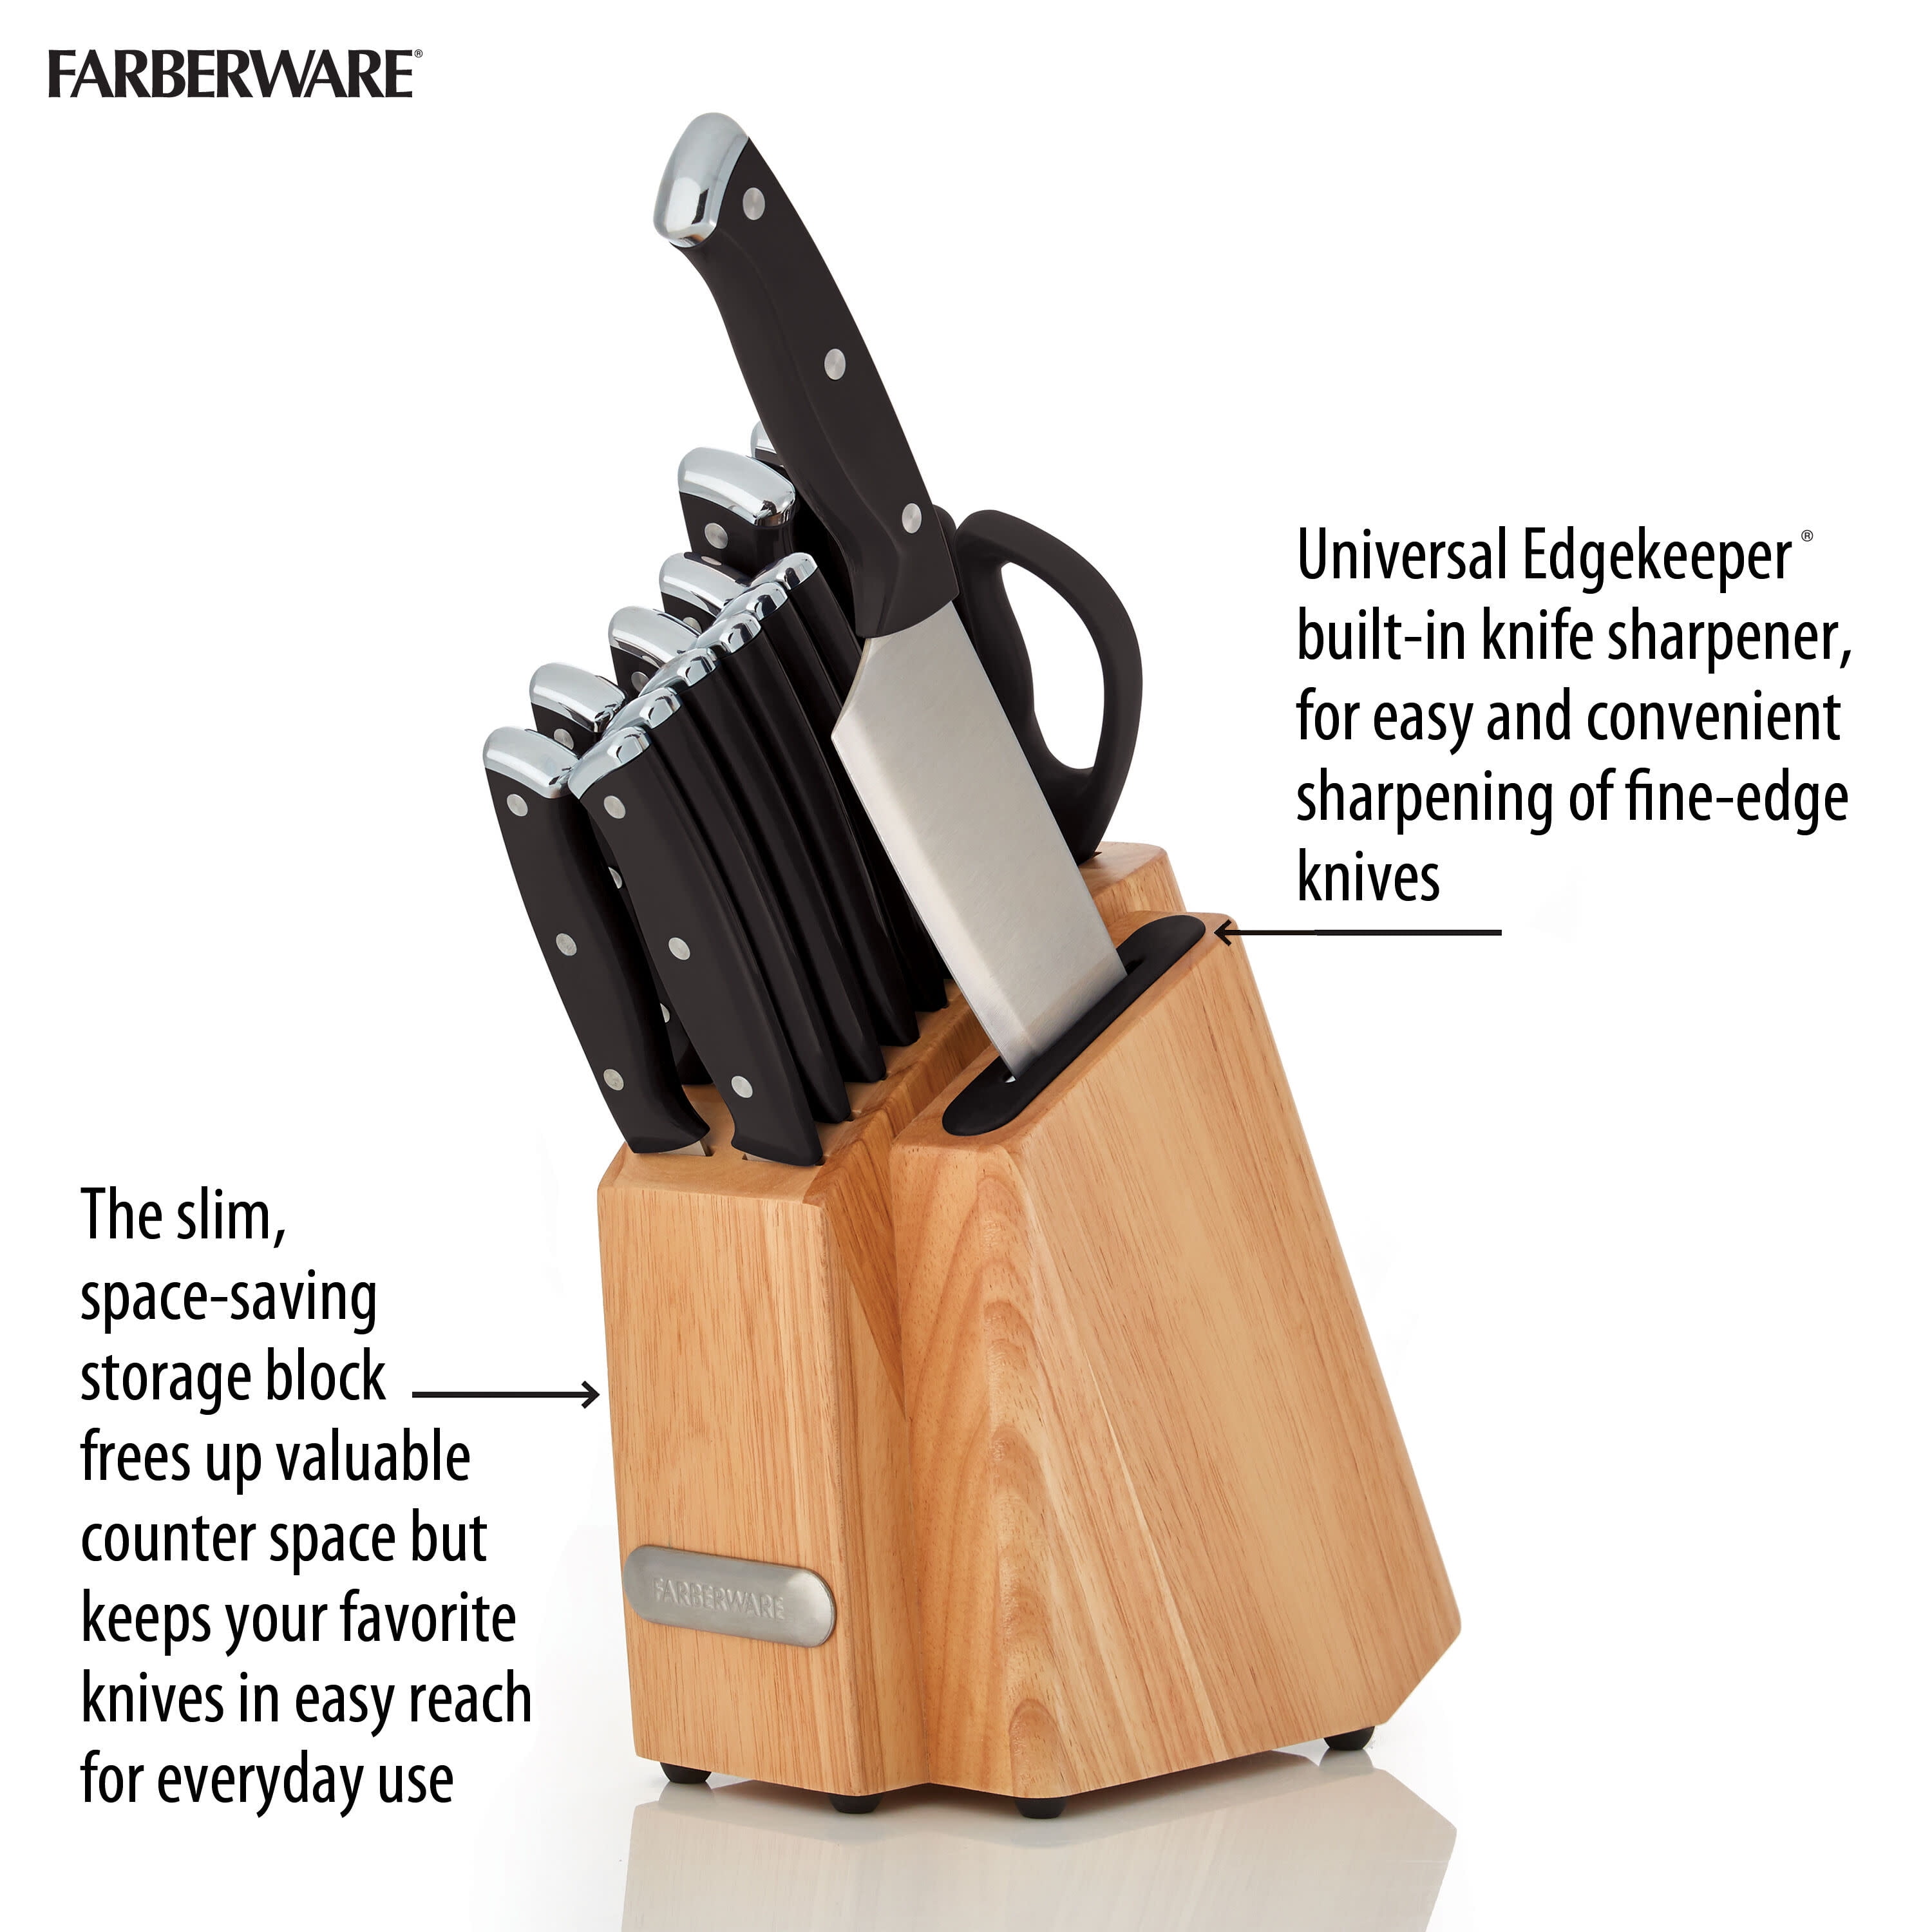 Farberware Edgekeeper 13 Piece Self Sharpening StainlessSteel Hollow Handle  Knife Block Set